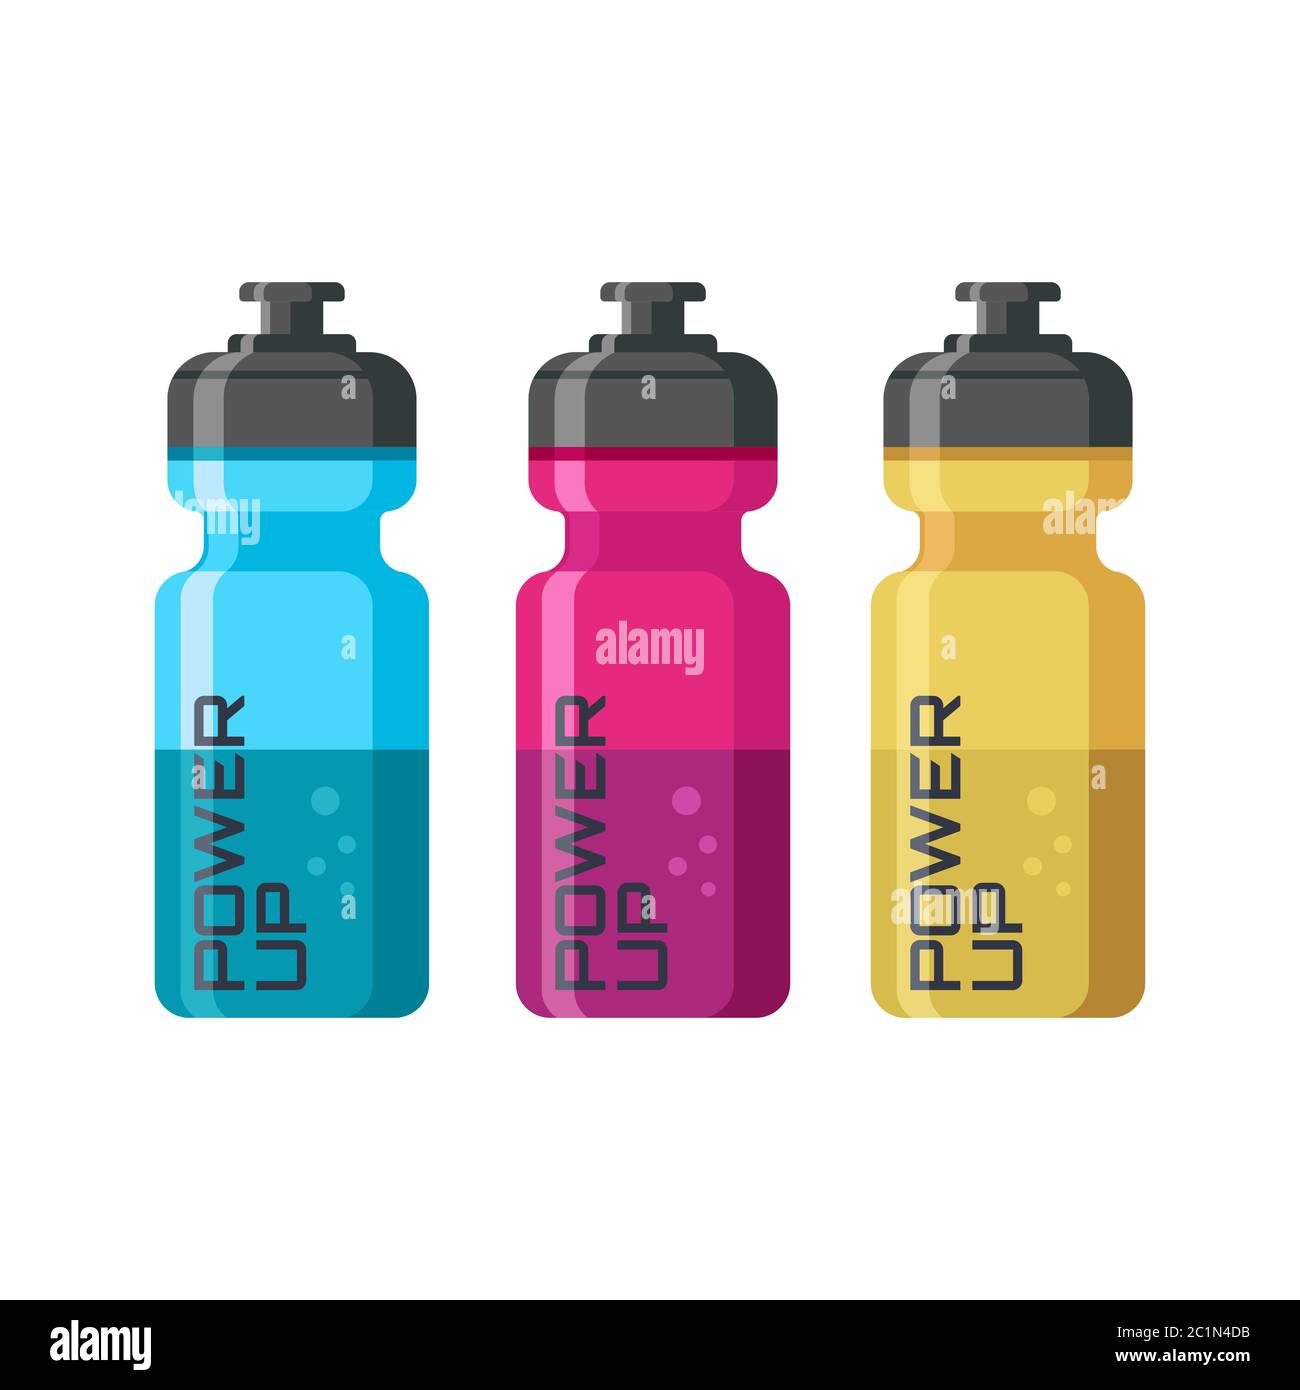 Design-Konzept für Energy-Drink-Flaschen für sportliche Aktivitäten. Professionelles Produktdesign für Modellbeispiele von Sportflaschen-Verpackungen Stock Vektor